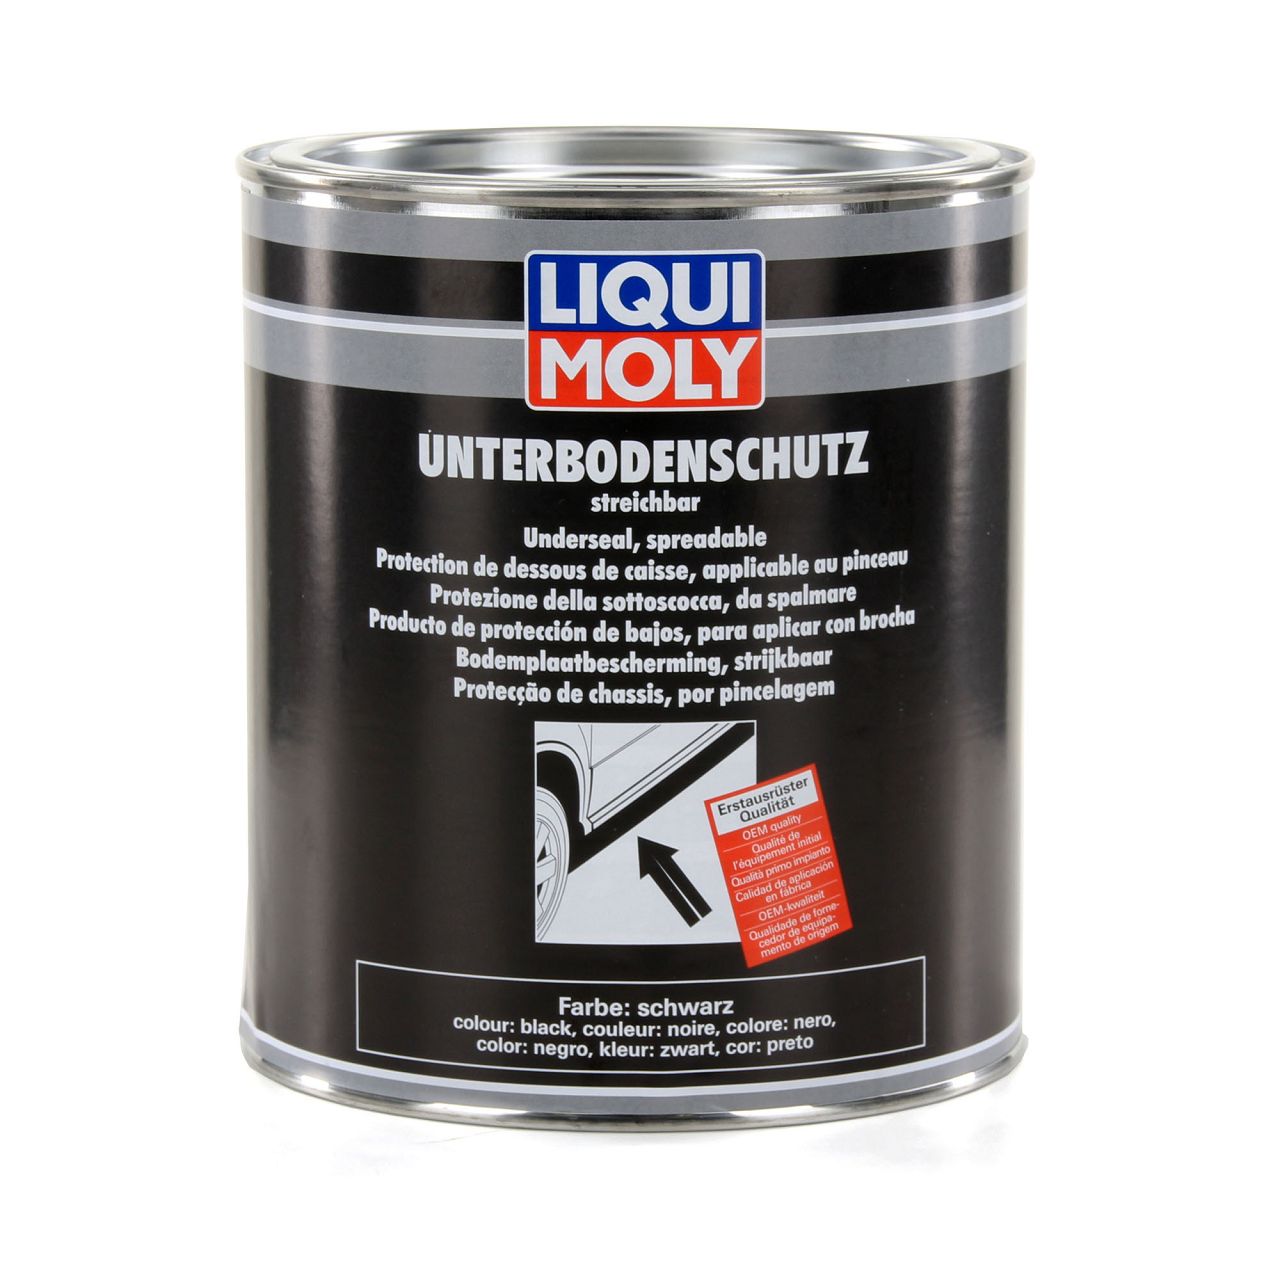 LIQUI MOLY 6119 Unterboden-Schutz Unterbodenschutz streichbar SCHWARZ 2x 2kg